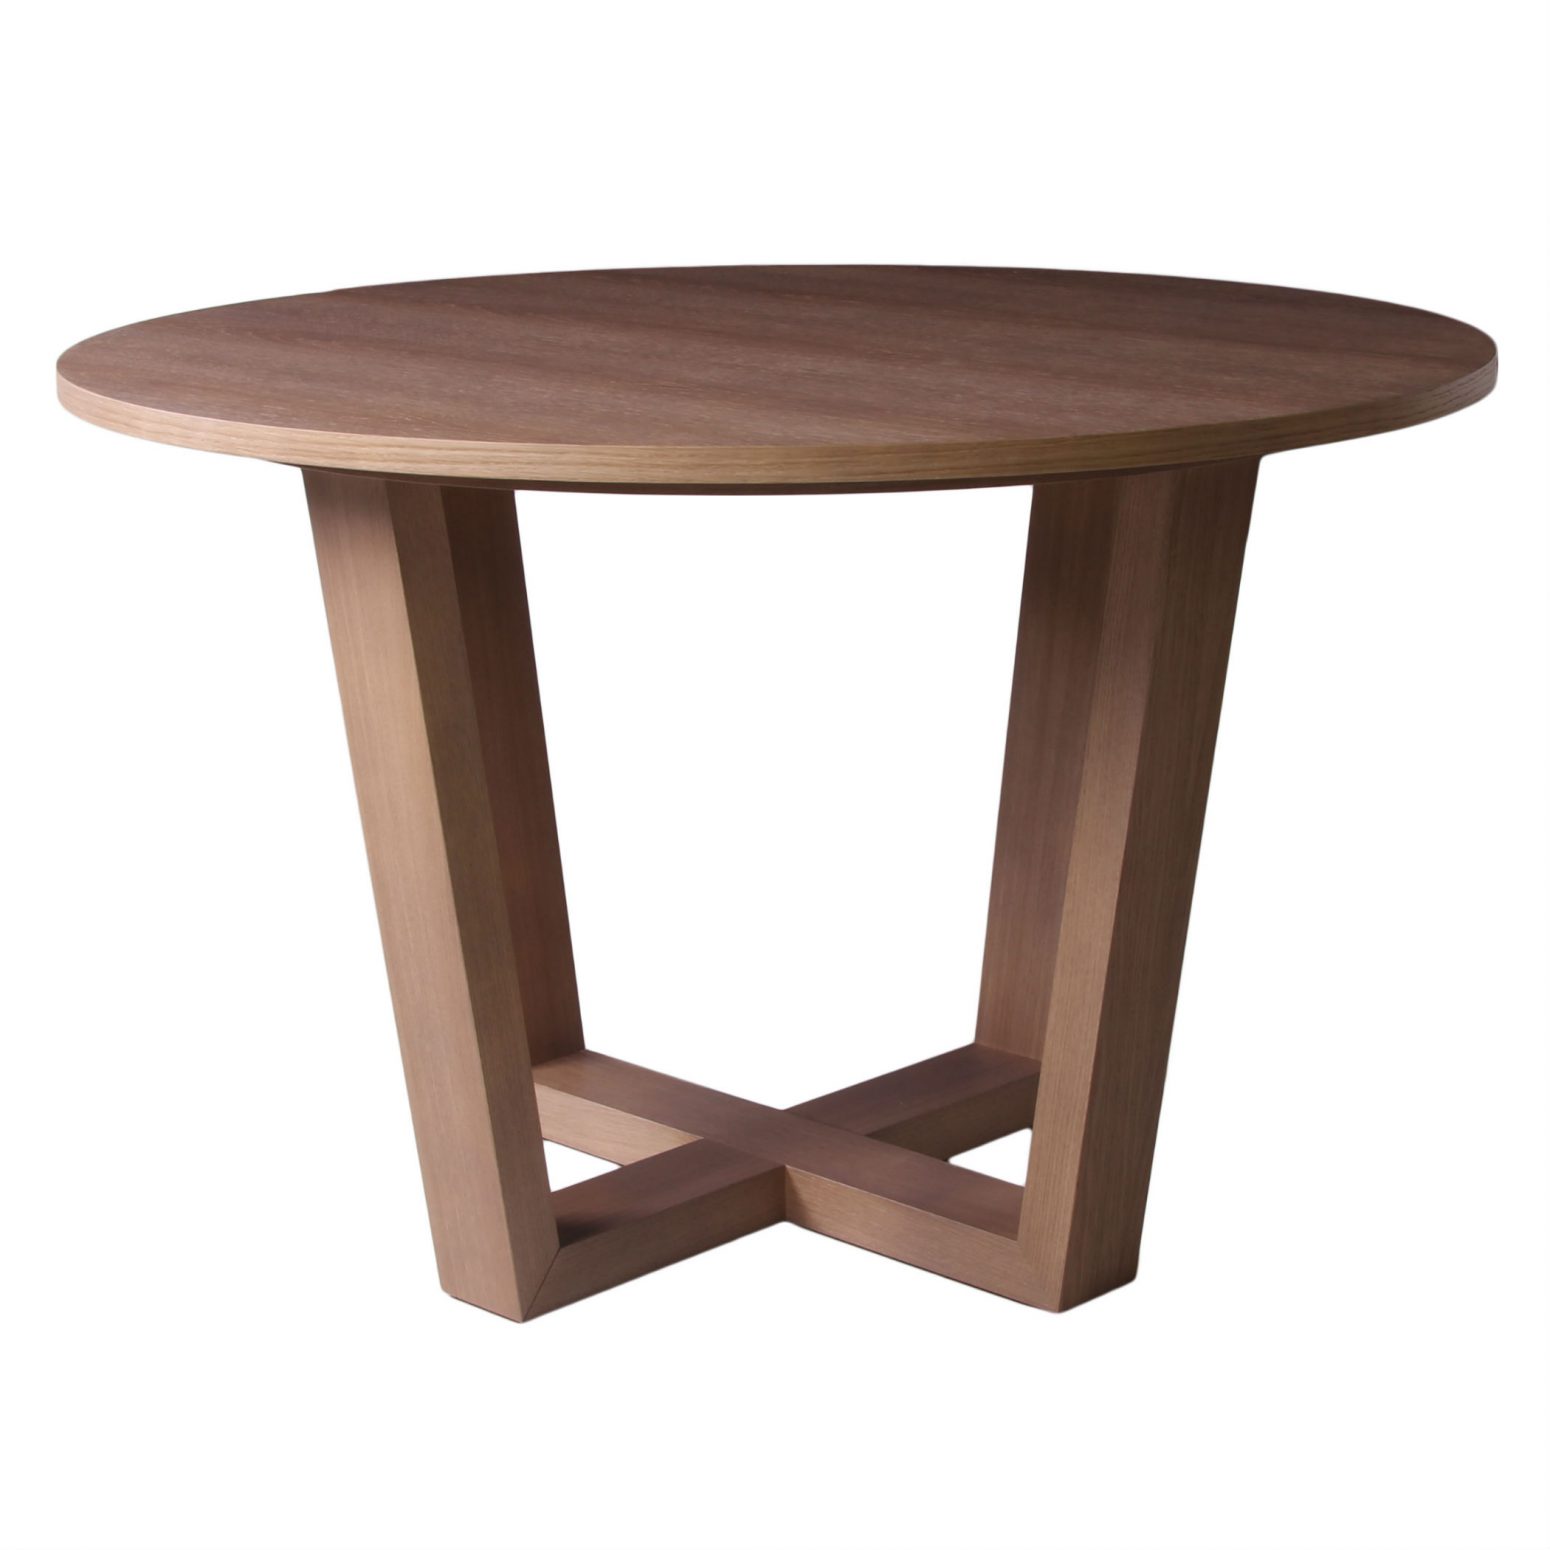 Table moderne ronde avec pieds croisés